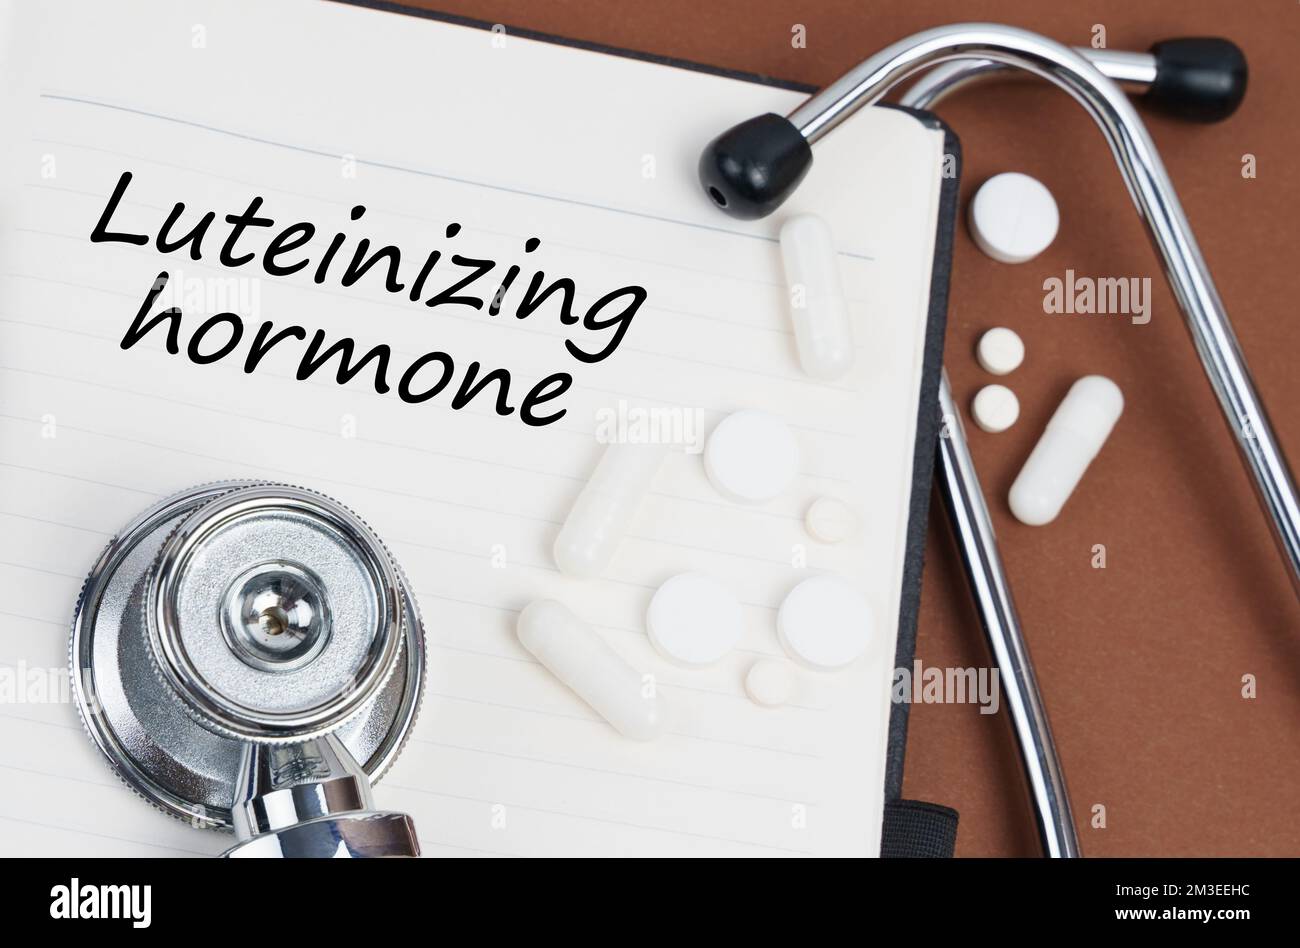 Medizin und Gesundheitskonzept. Auf einer braunen Oberfläche liegen Pillen, ein Stethoskop und ein Notizbuch mit der Aufschrift "Luteinisierendes Hormon" Stockfoto